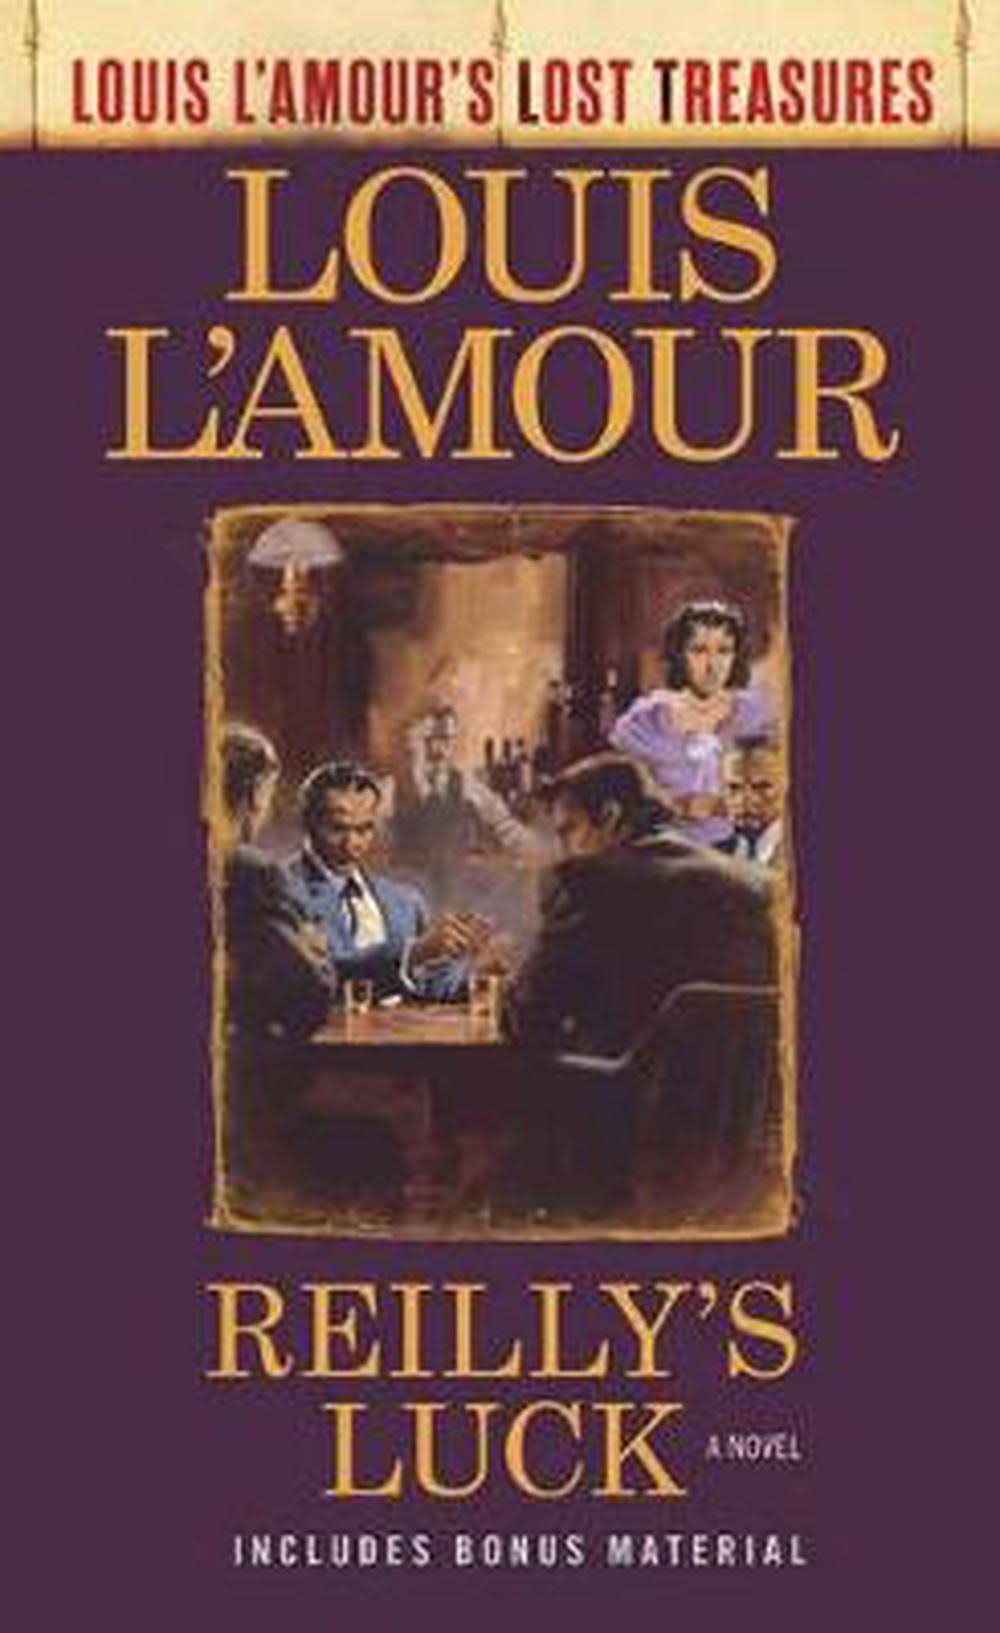 Reilly's Luck: A Novel [Book]